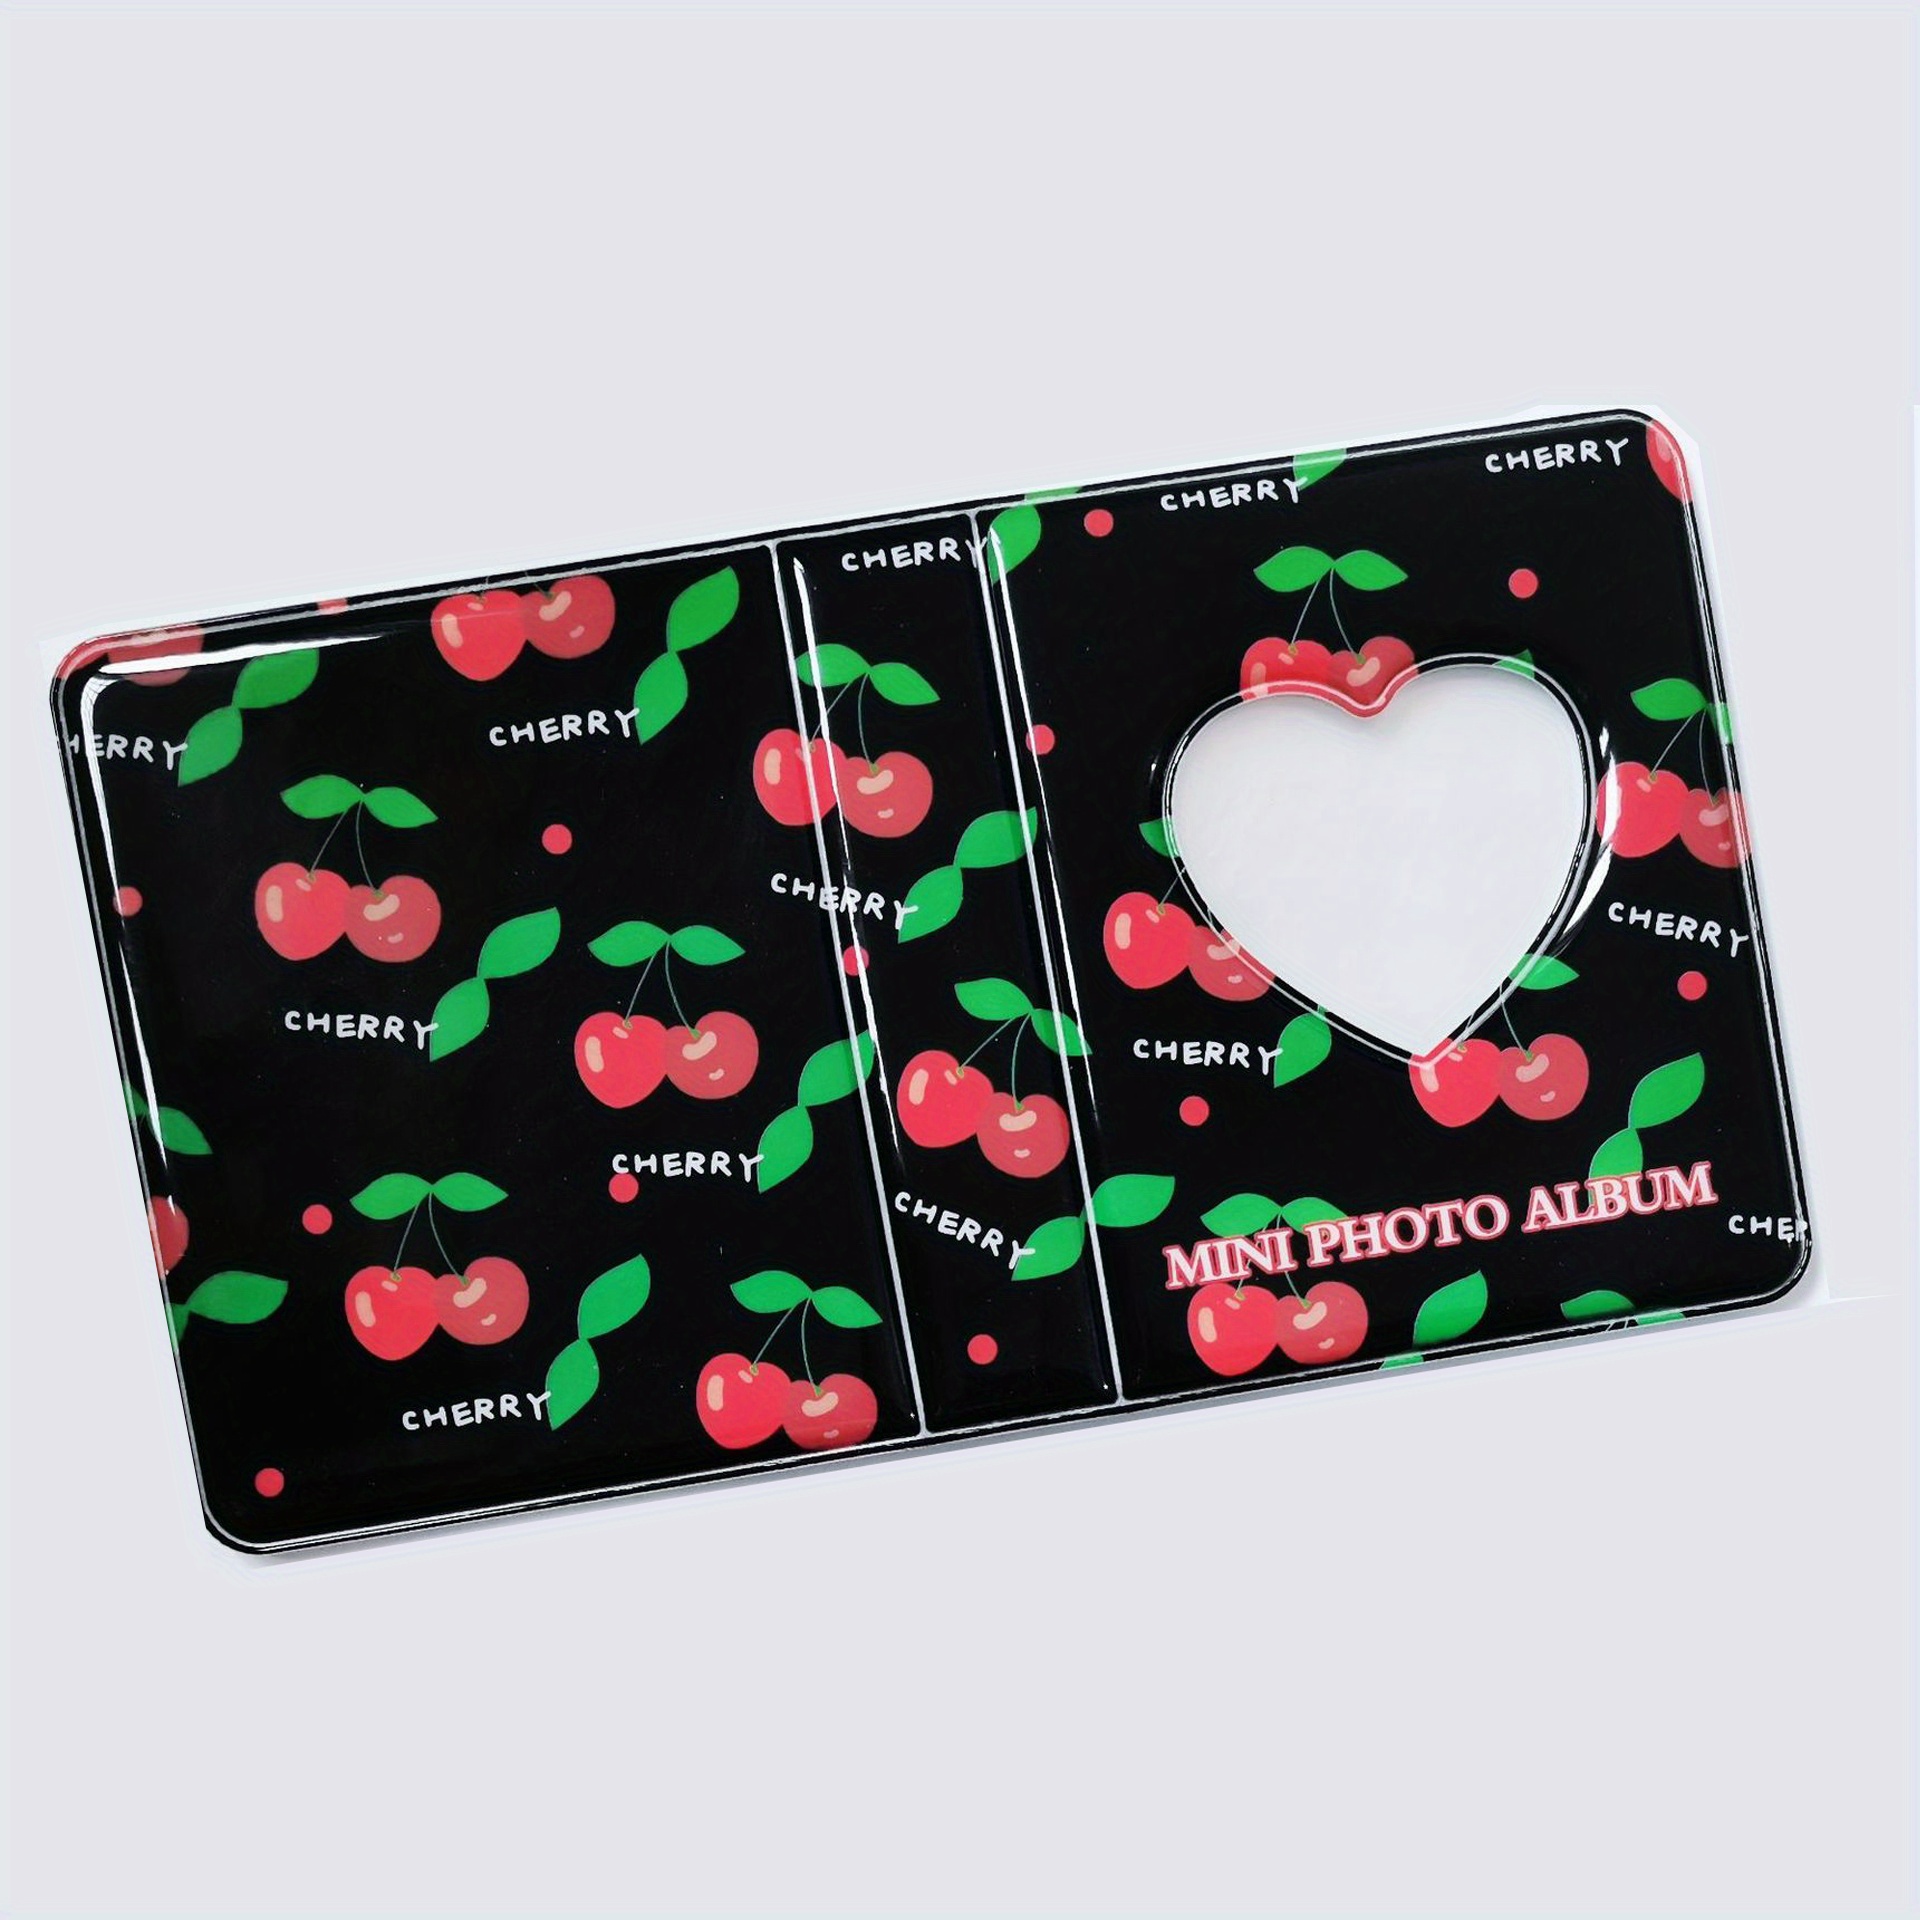 Kpop Photocard Binder Starter Kit - A5 Size – LittleRandomIdeas